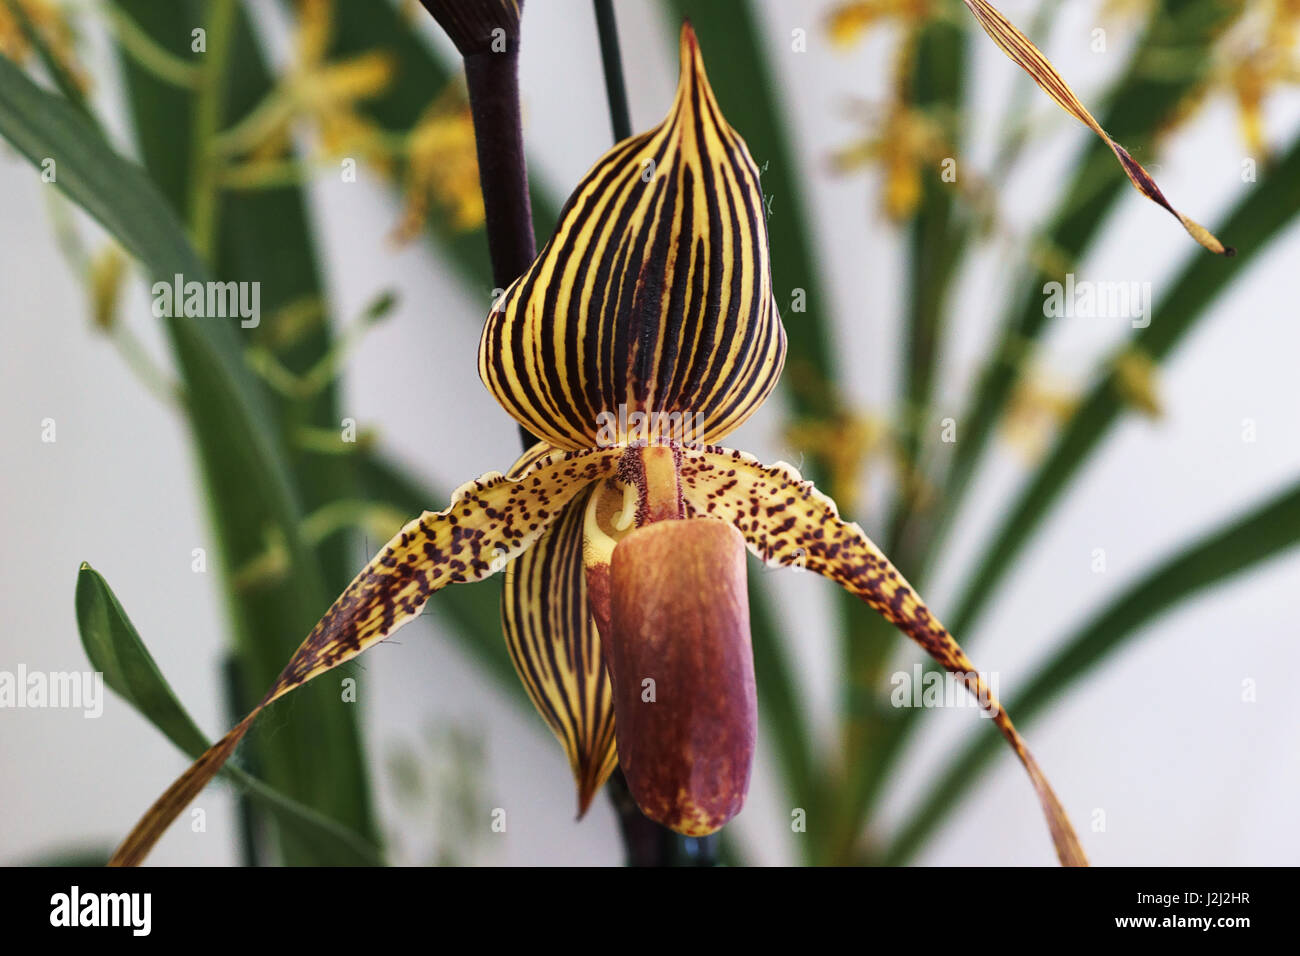 Orchid flower, paphiopedilum rothschildianum Stock Photo